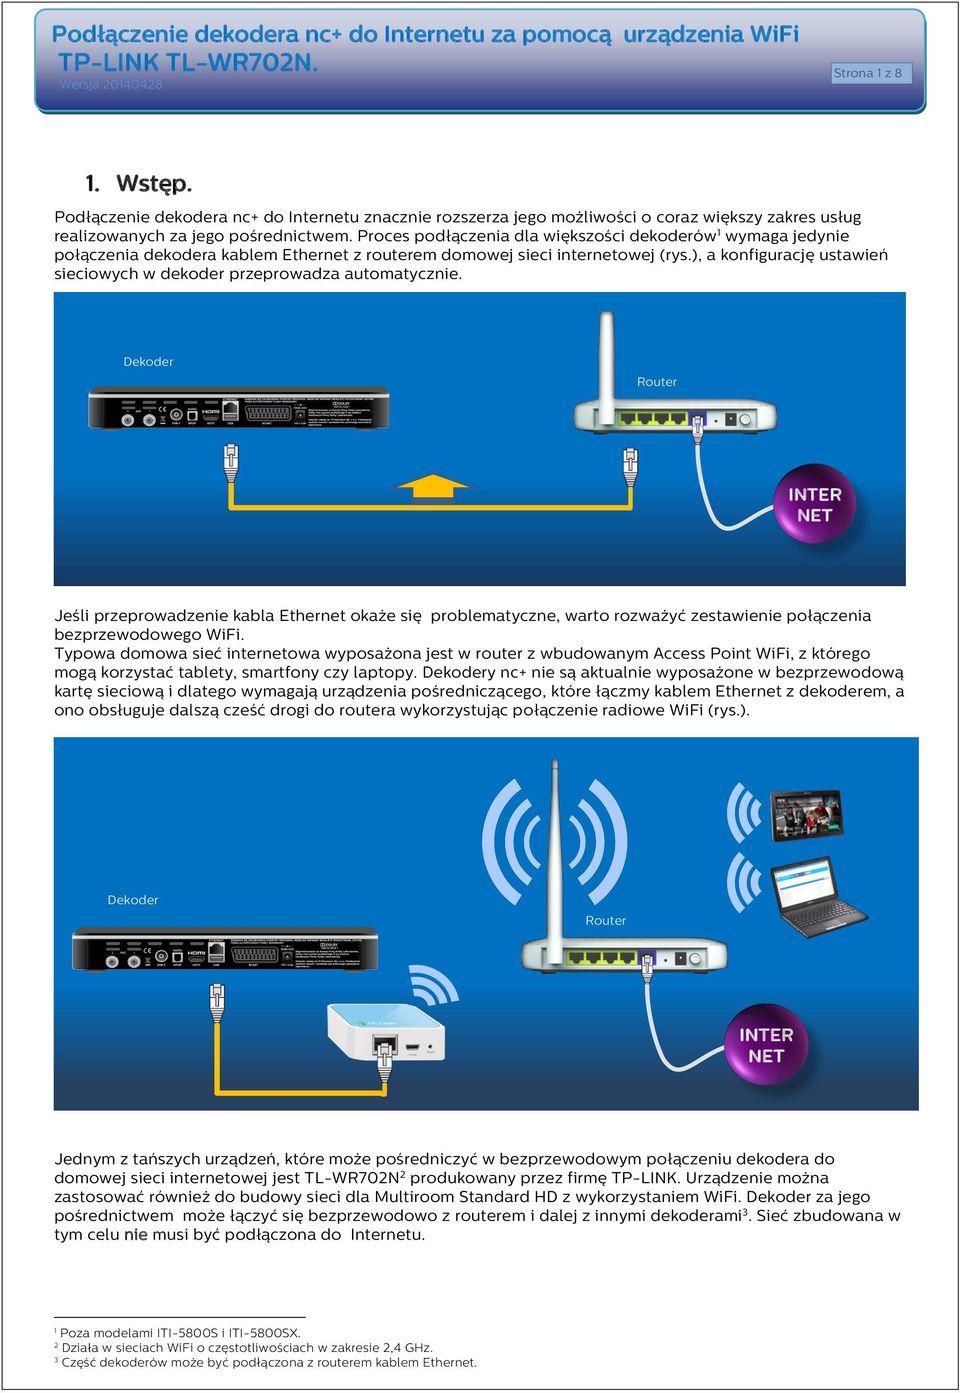 Proces podłączenia dla większości dekoderów 1 wymaga jedynie połączenia dekodera kablem Ethernet z routerem domowej sieci internetowej (rys.